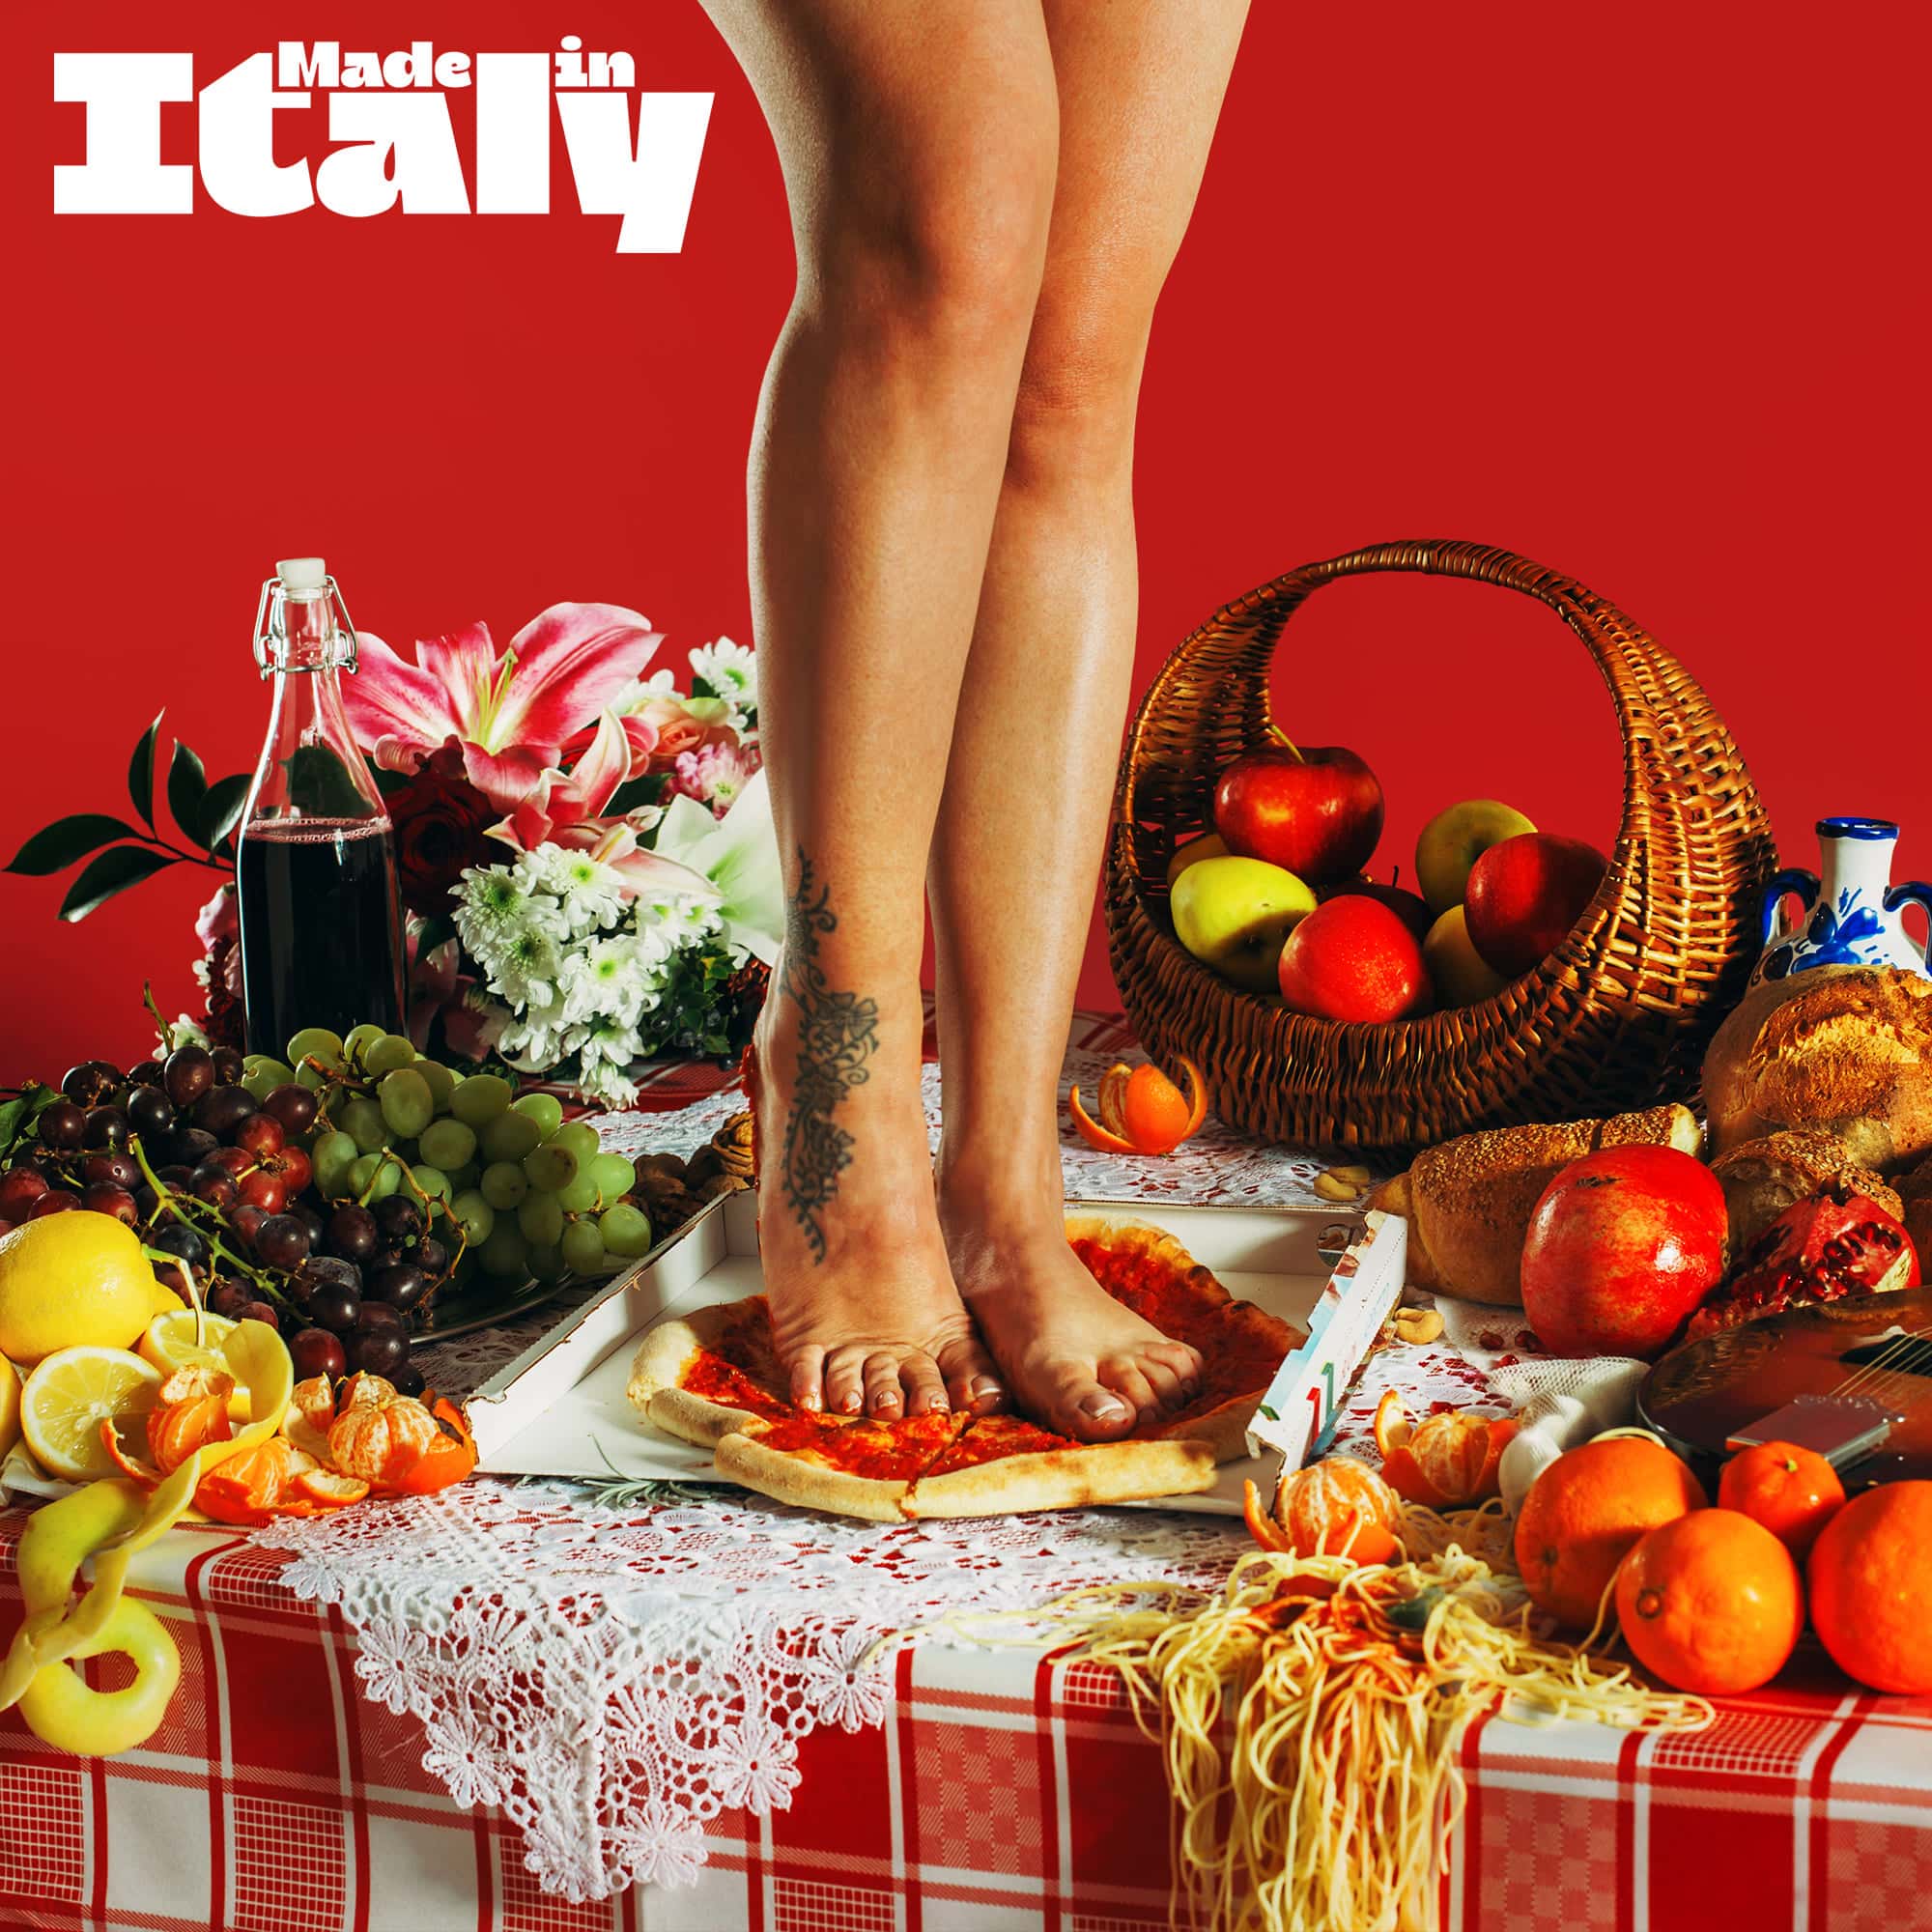 La cover di "Made in Italy"